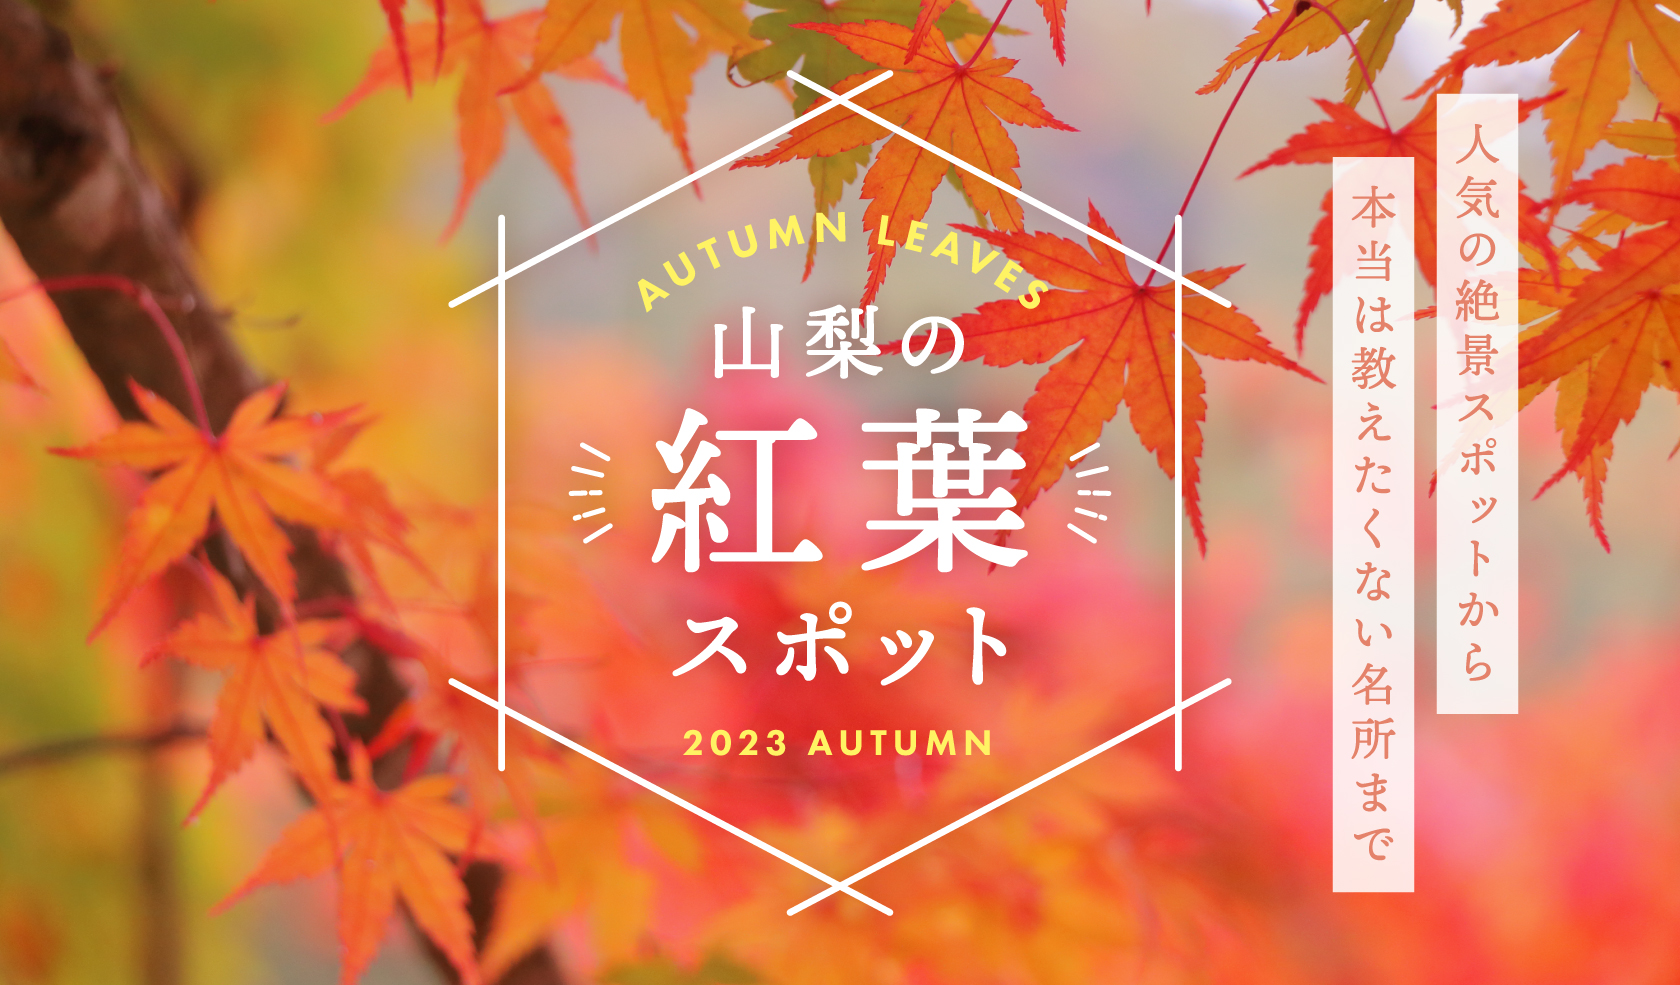 山梨县人气红叶景点2022 Autumn-从与富士山的竞争到不为人知的隐藏景点